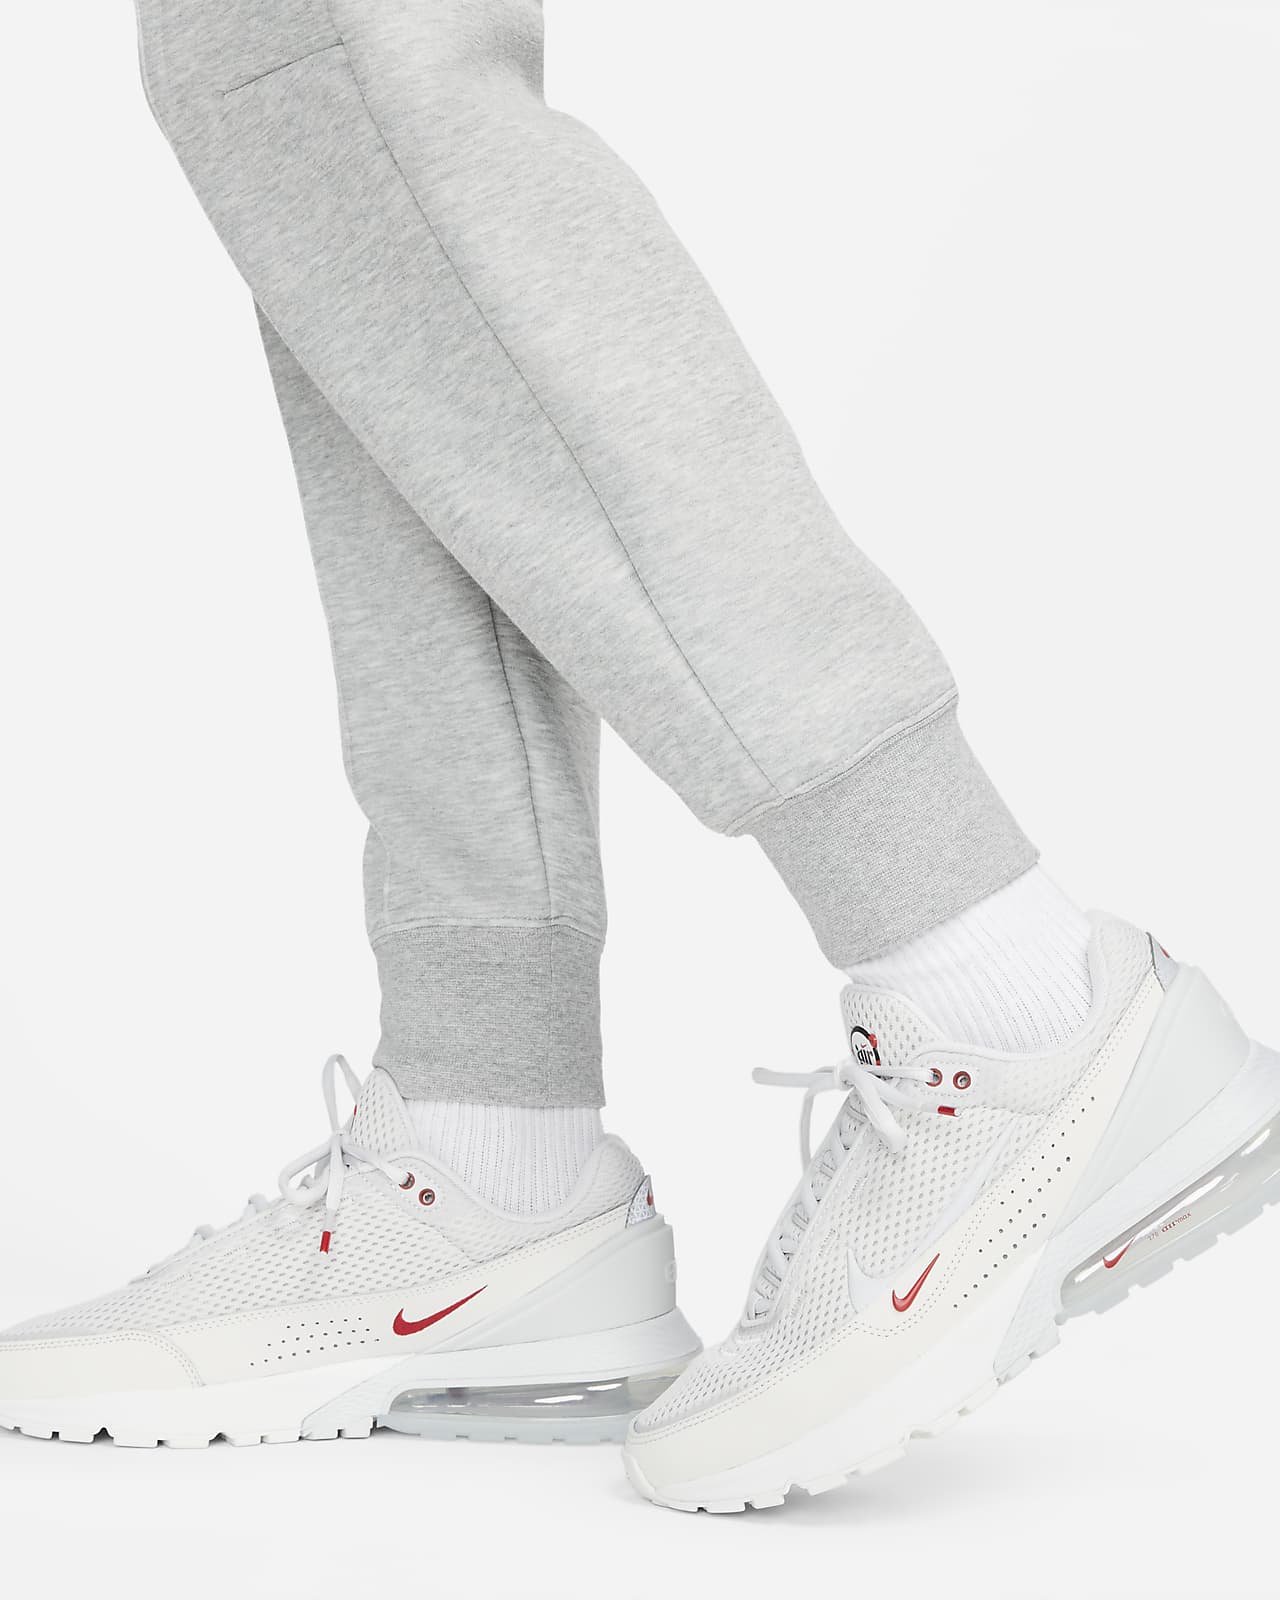 Women's jogging suit Nike Sportswear Tech Fleece - Mindarie-wa wear - Nike  - Nike air jordan v 5 low alternate 90 retro 2015 bt toddler 314340-001 sz  4c - Brands